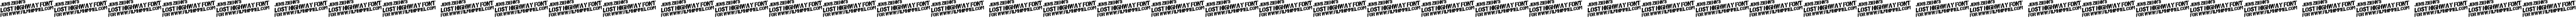 Пример написания шрифтом Lost Highway текста на русском